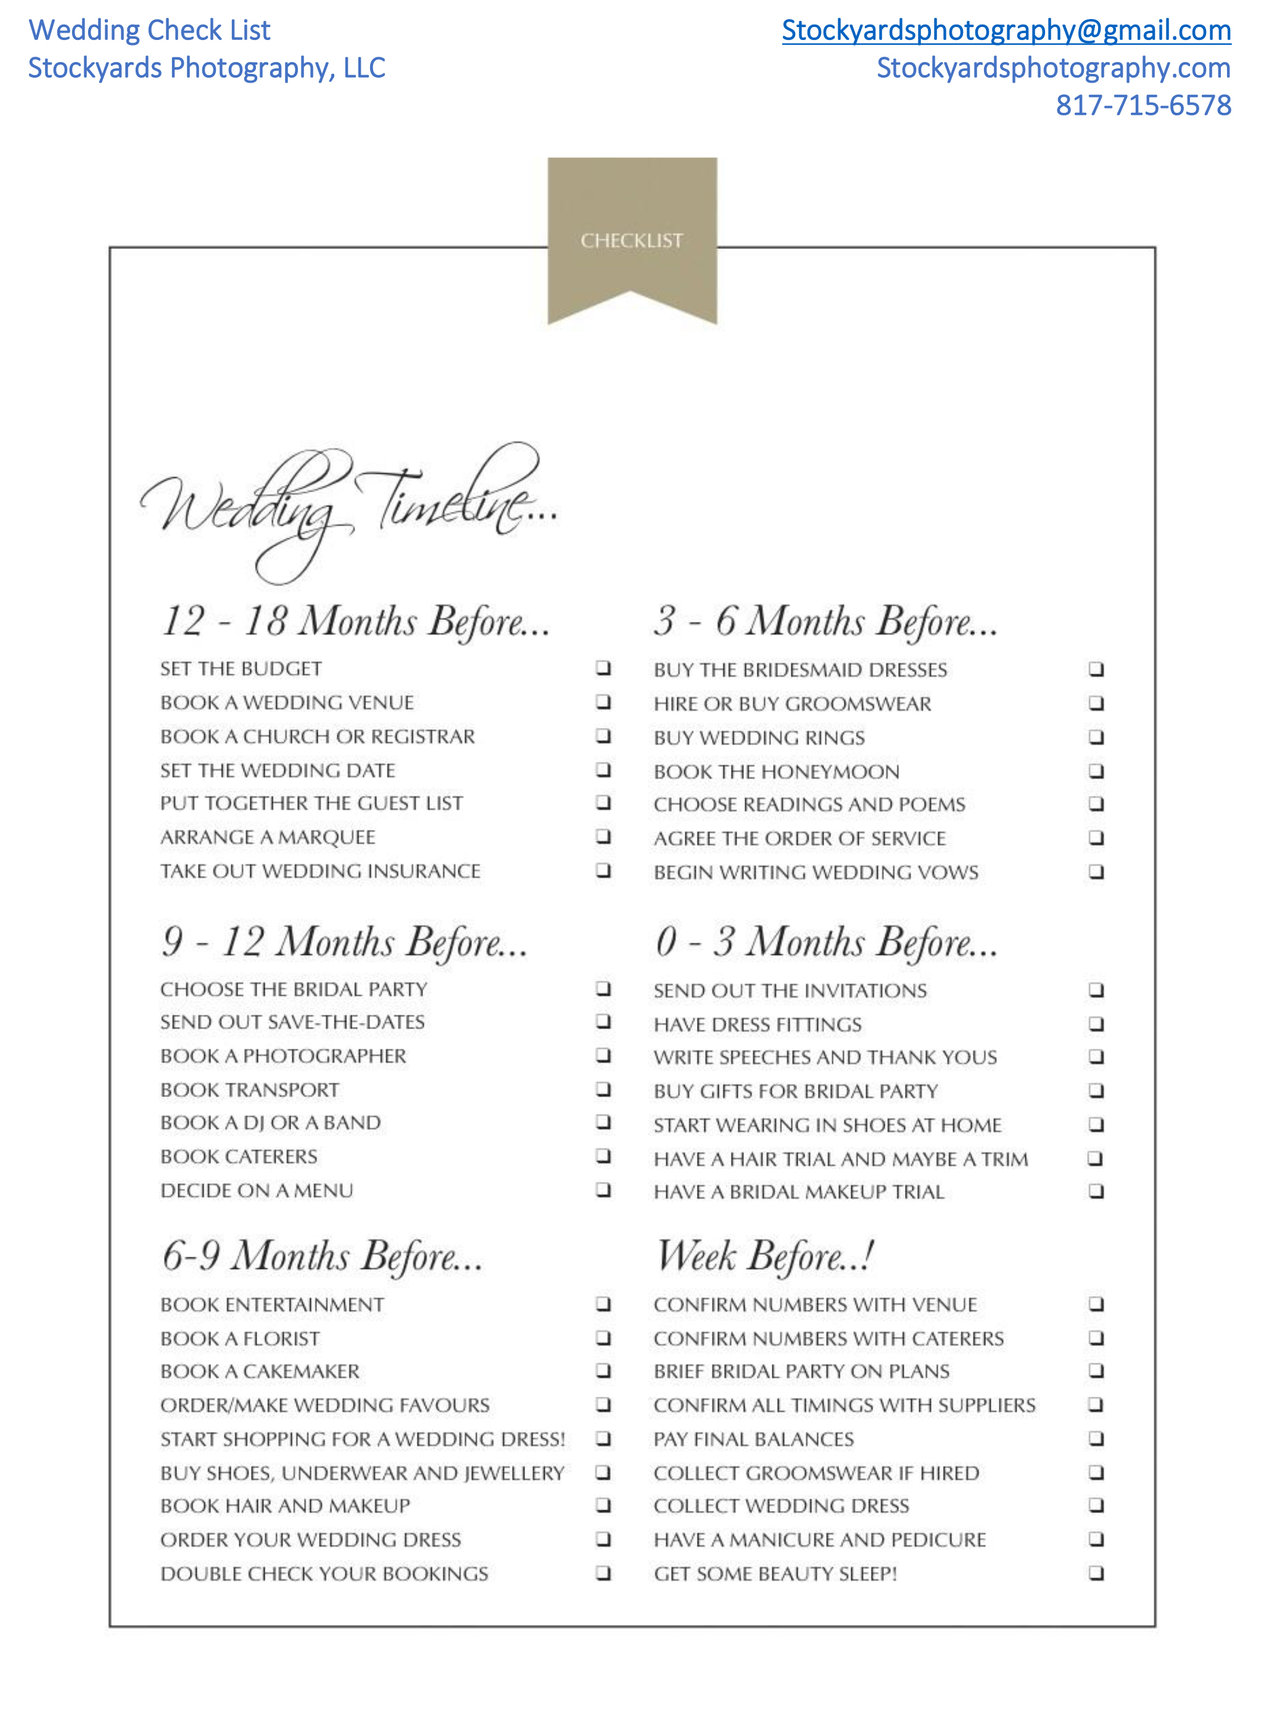 Printable Wedding Venue Checklist: How to Book a Wedding Venue